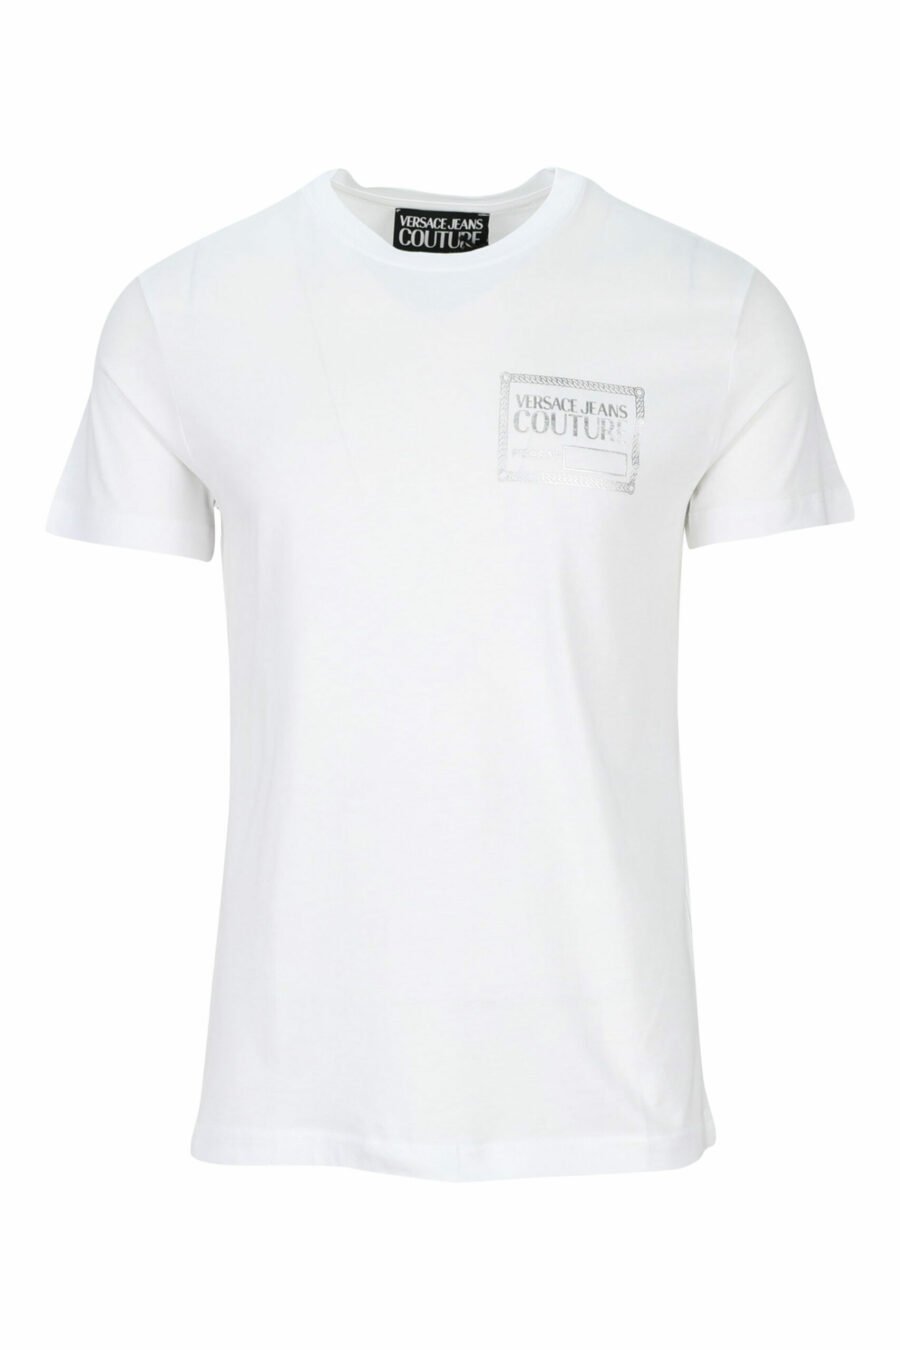 T-shirt branca com minilogo prateado "piece number" - 8052019456936 scaled